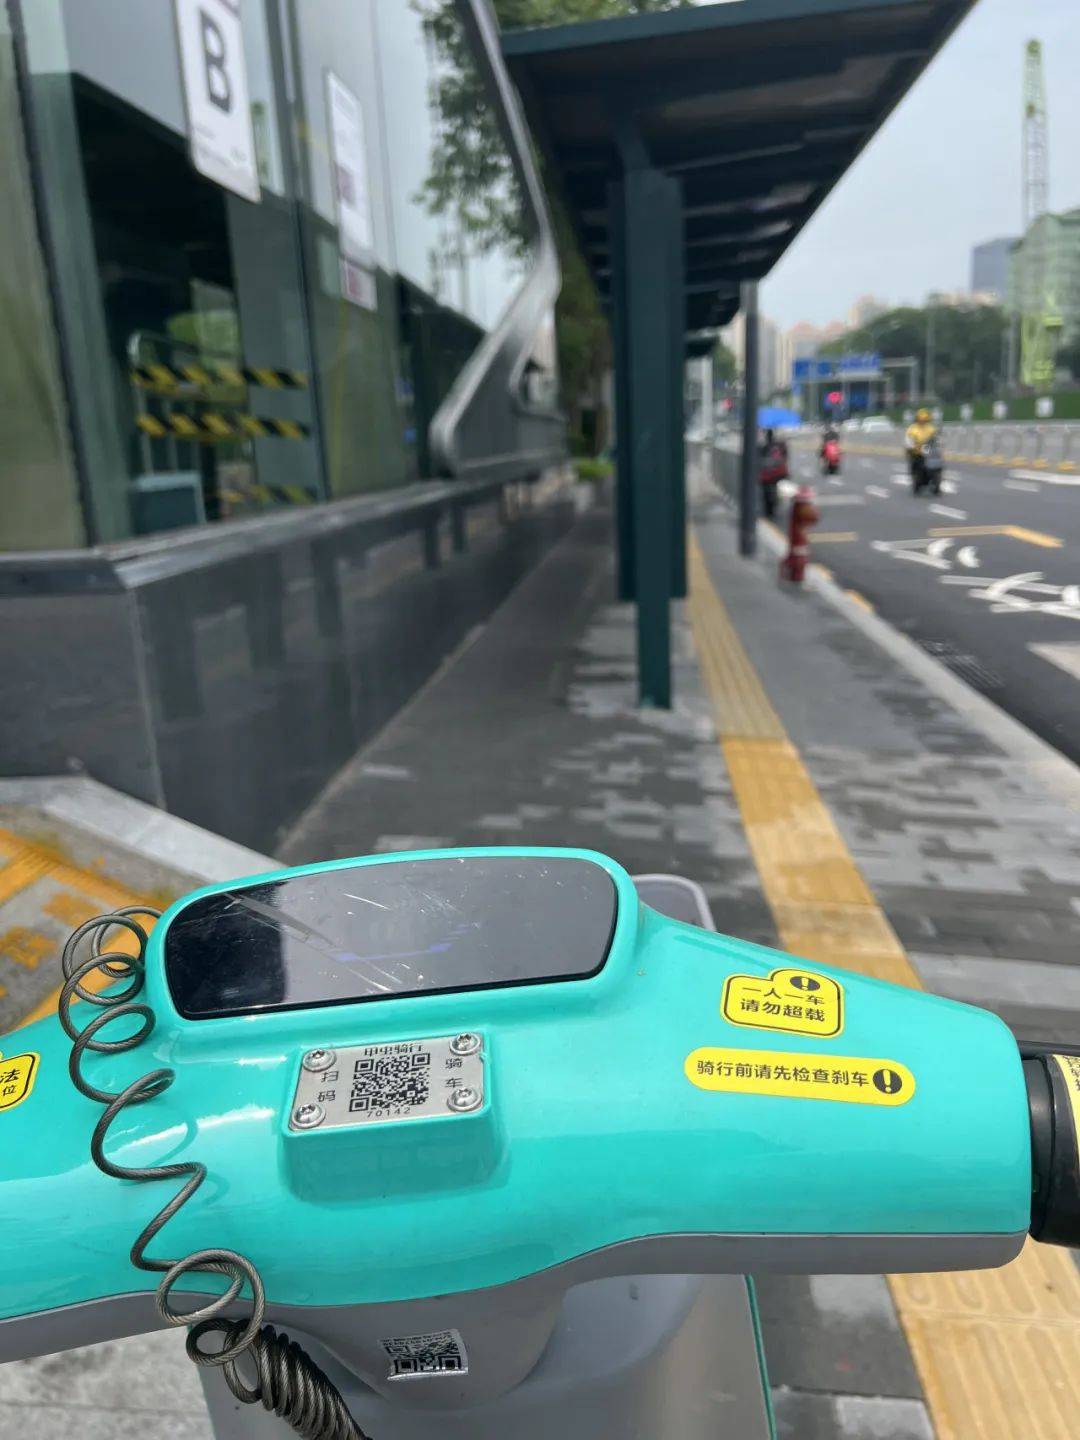 深圳放开共享电动自行车了?怎么连南山都有了!